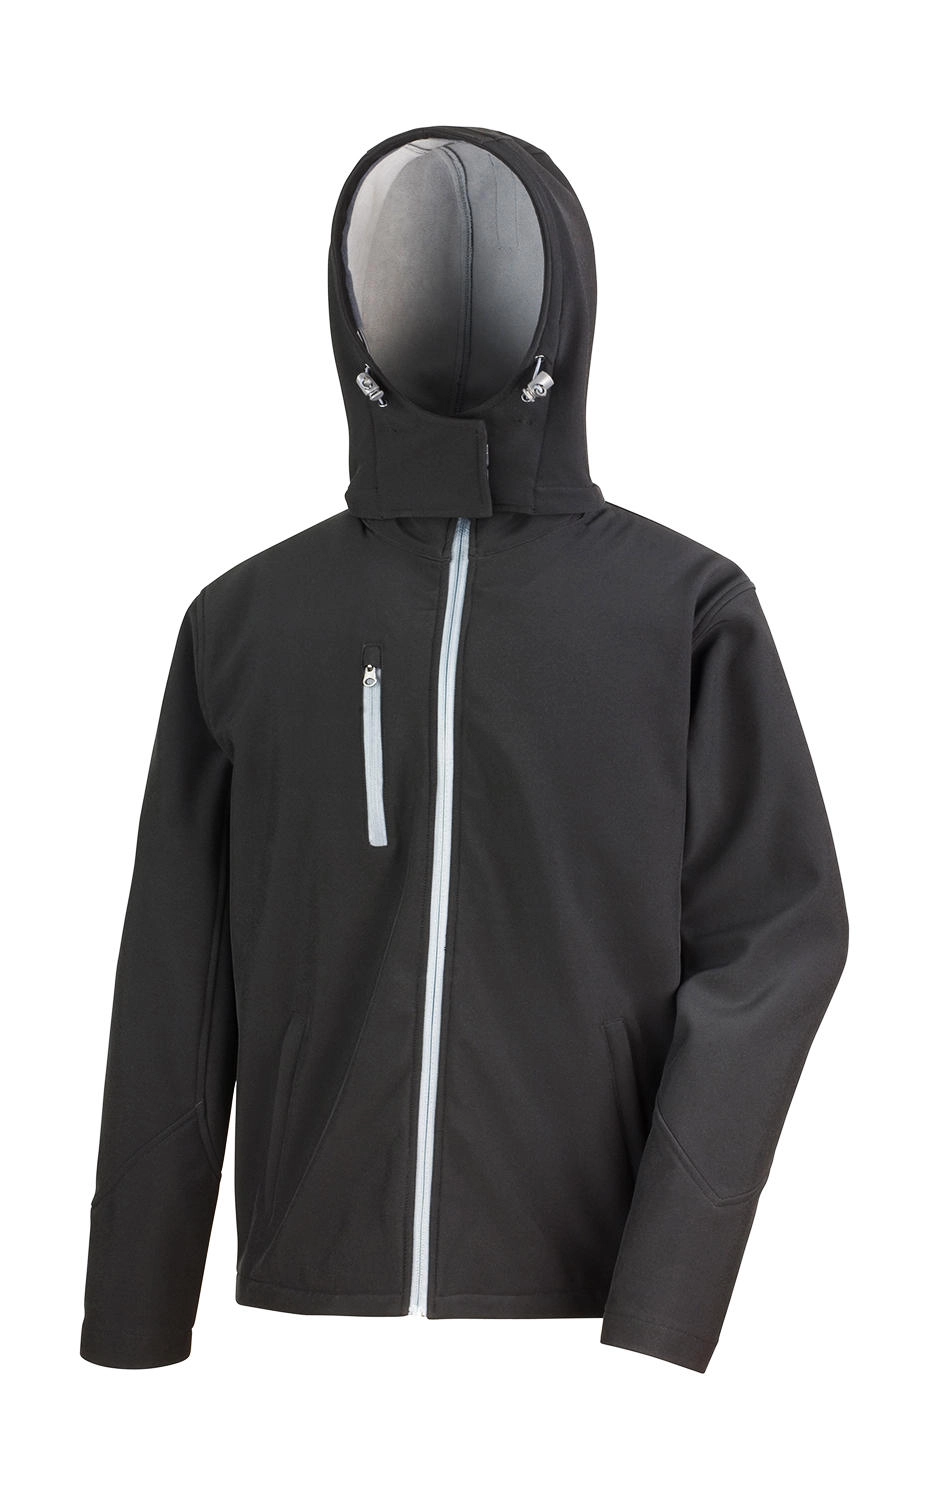 TX Performance Hooded Softshell Jacket zum Besticken und Bedrucken in der Farbe Black/Grey mit Ihren Logo, Schriftzug oder Motiv.